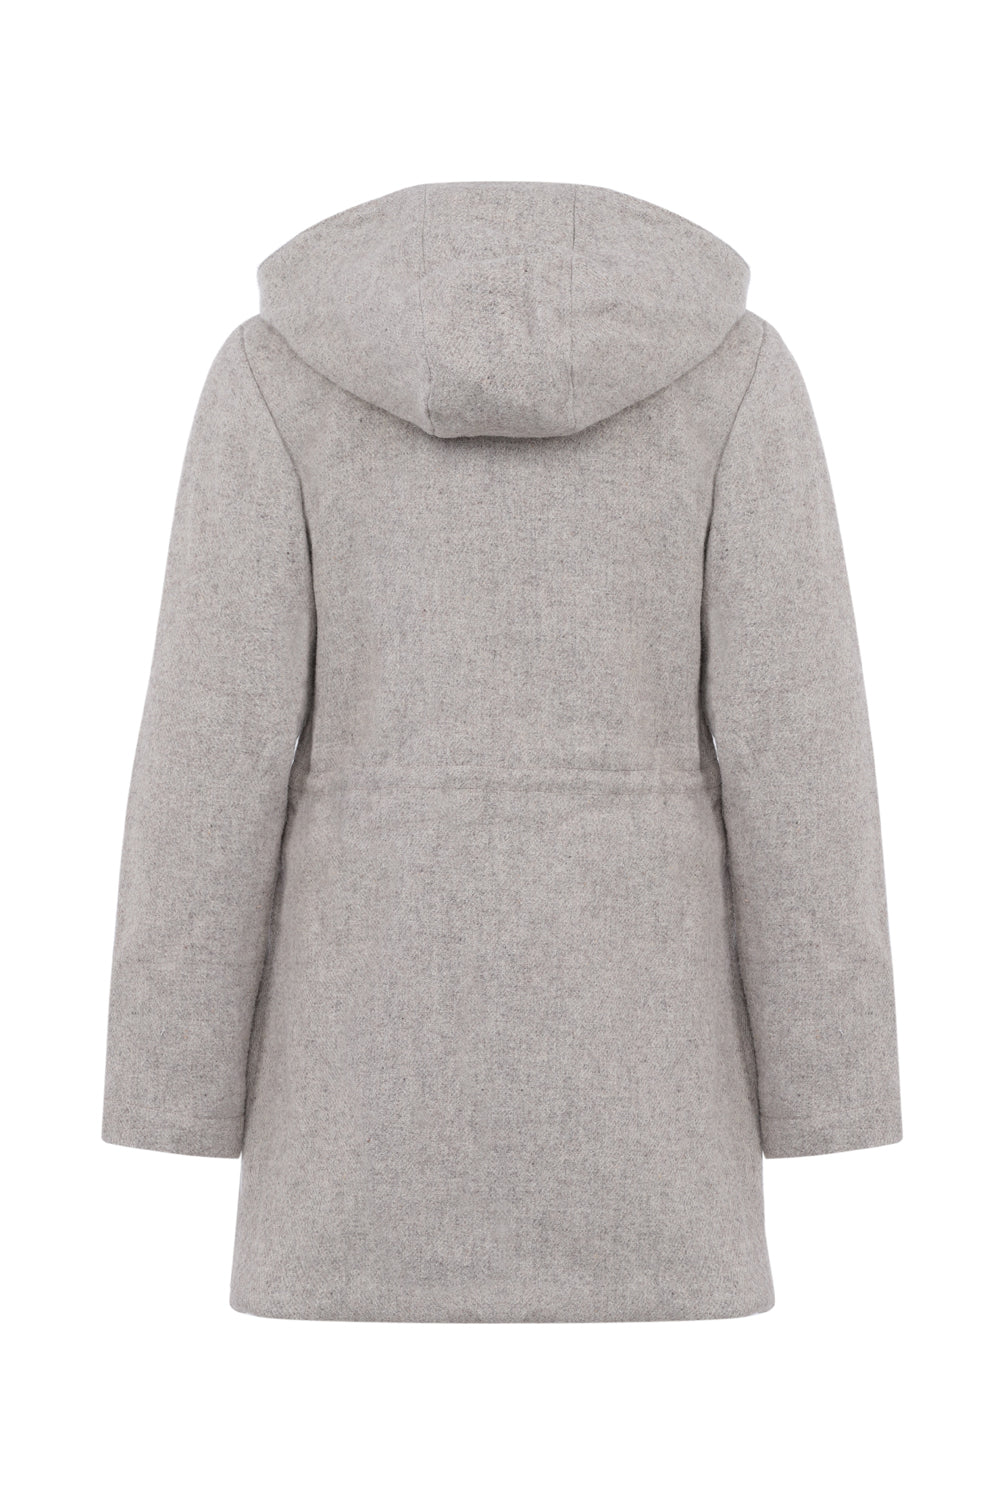 Manteau parka femme éthique et responsable ♻️, gris clair, en 100% laine des Pyrénées et doubure coton, déperlant, capuche, made in France 🇫🇷, maison izard.